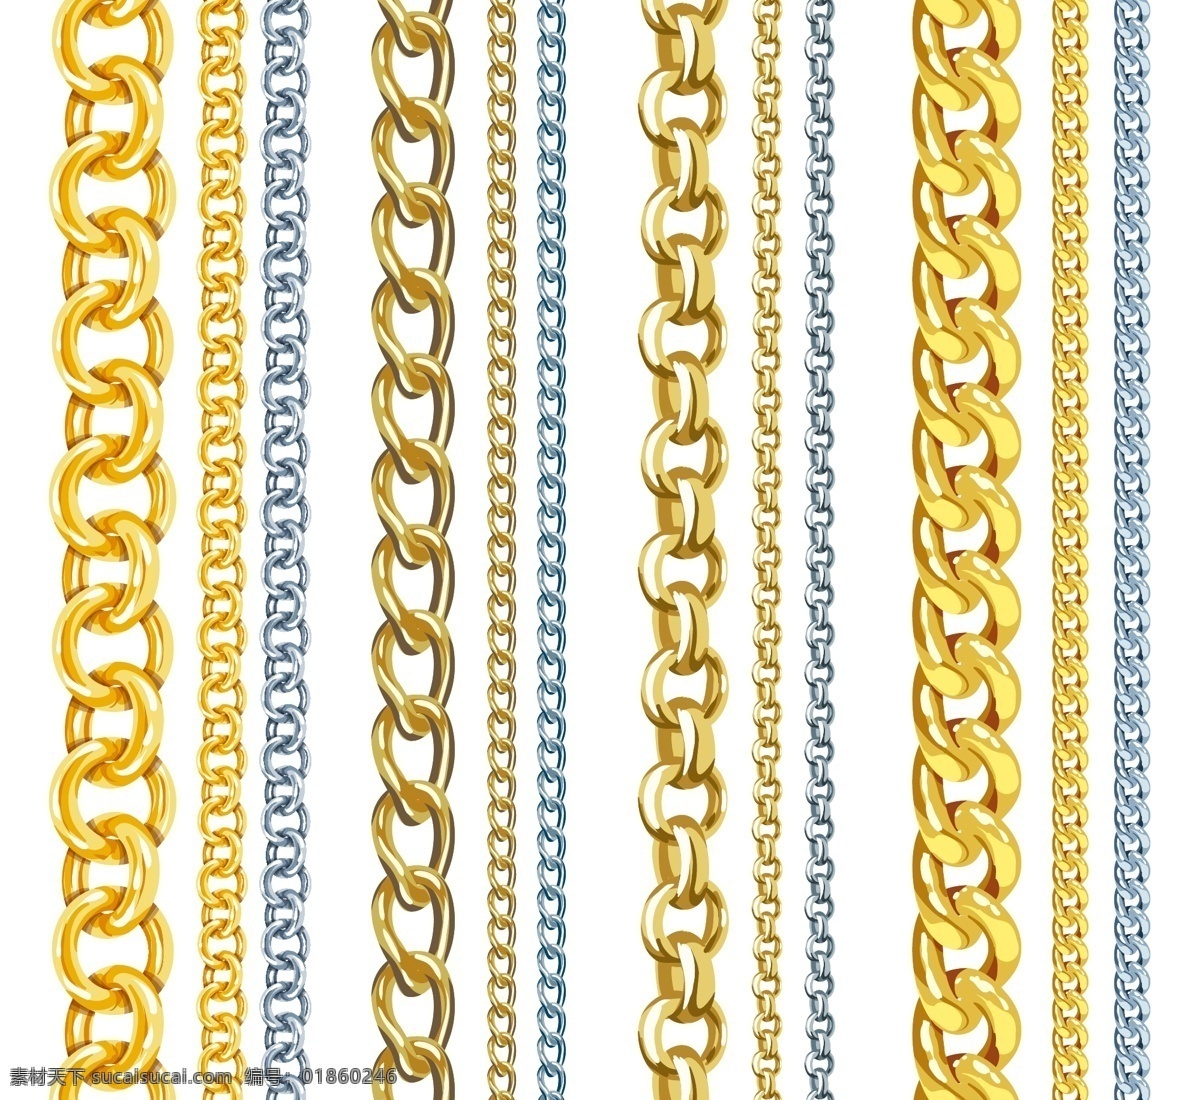 金属 链条 链子 矢量图 铁链 装饰 其他矢量图